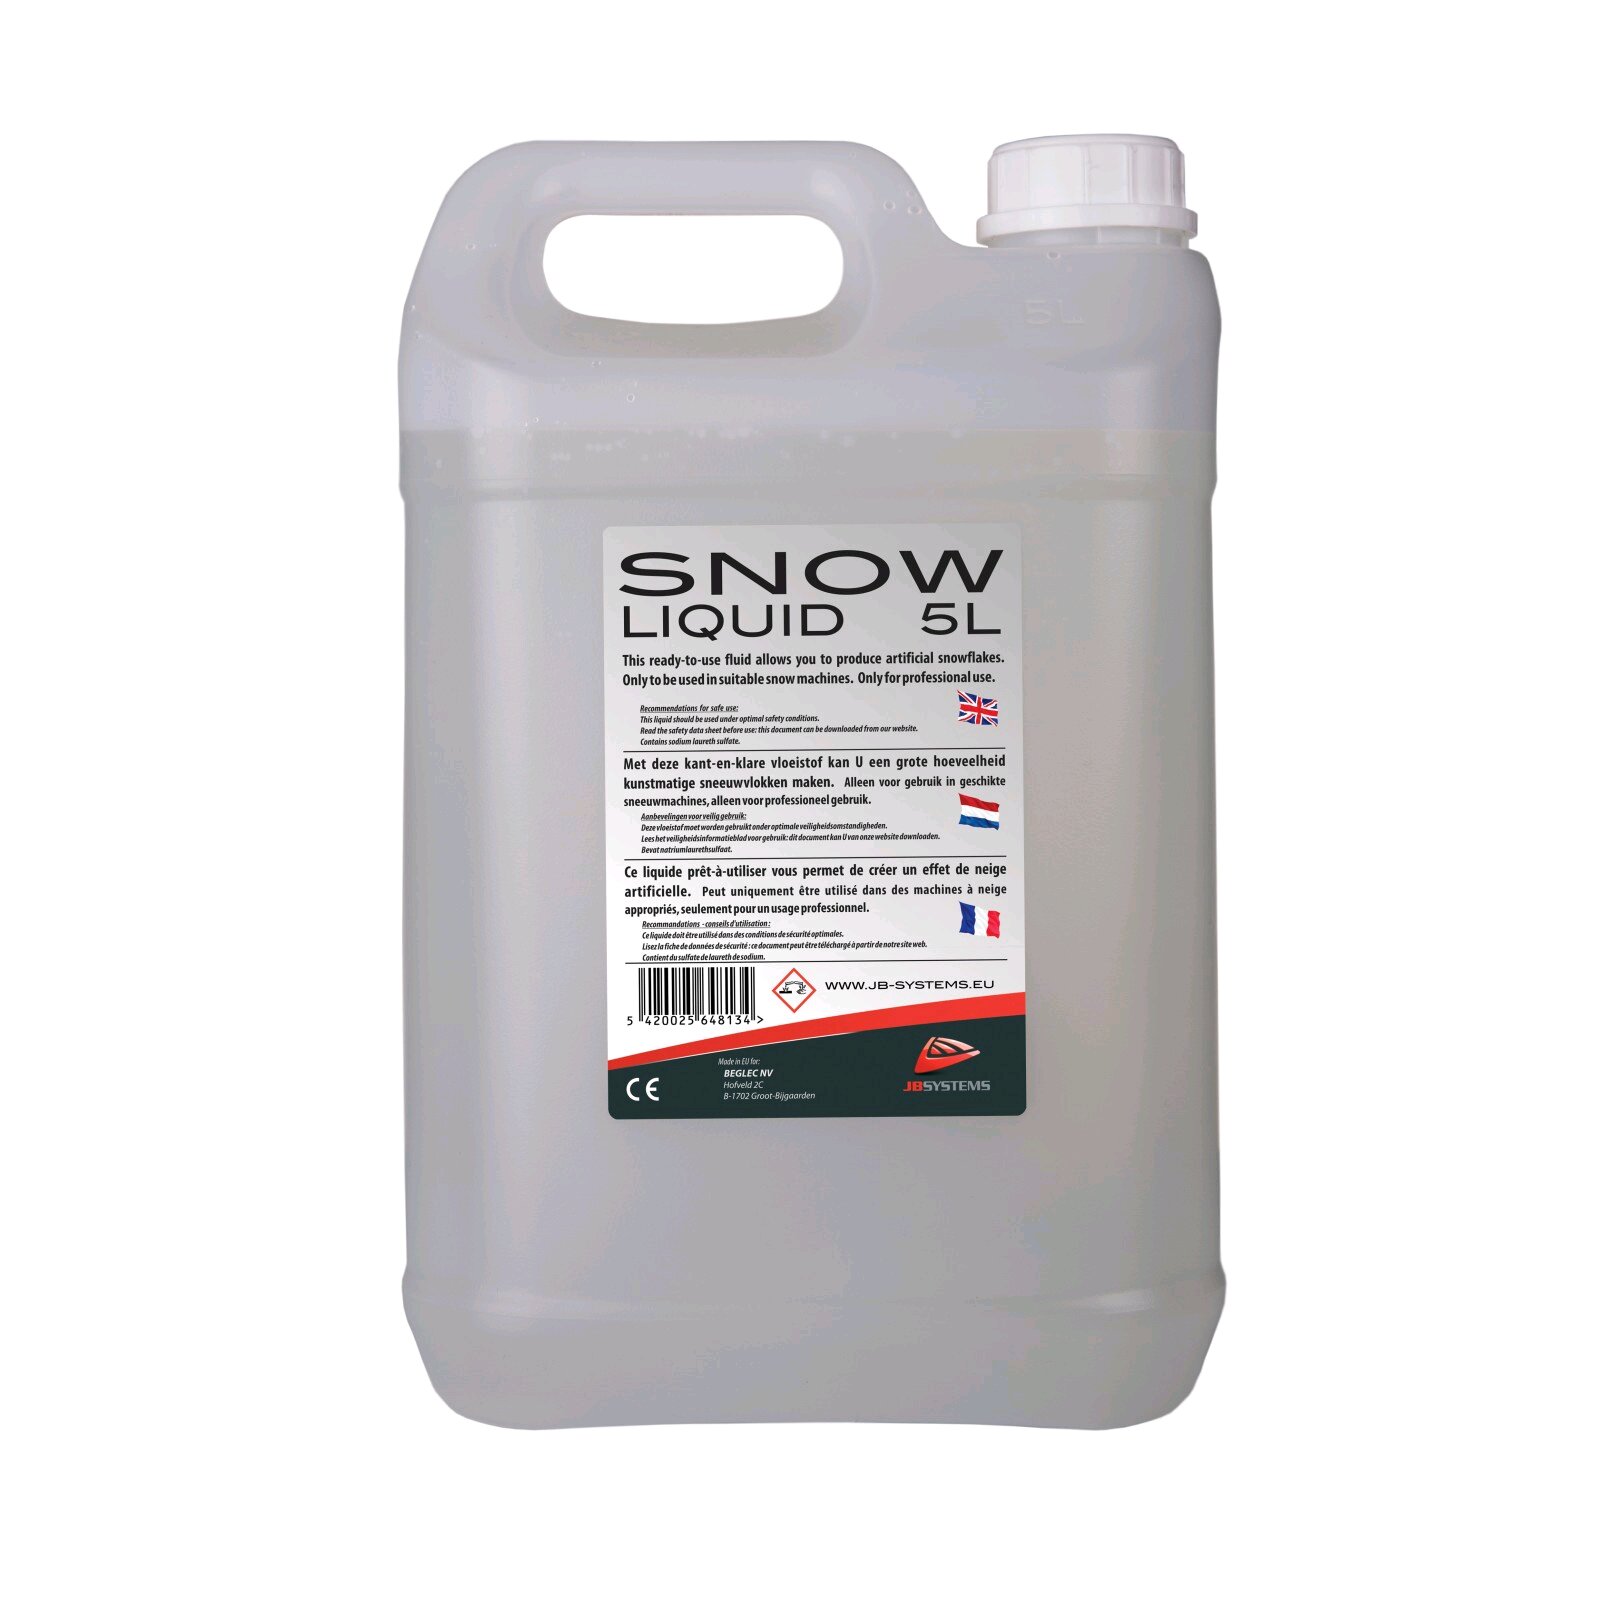 JBSYSTEMS SNOW LIQUID 5L Liquid for snow machine : photo 1